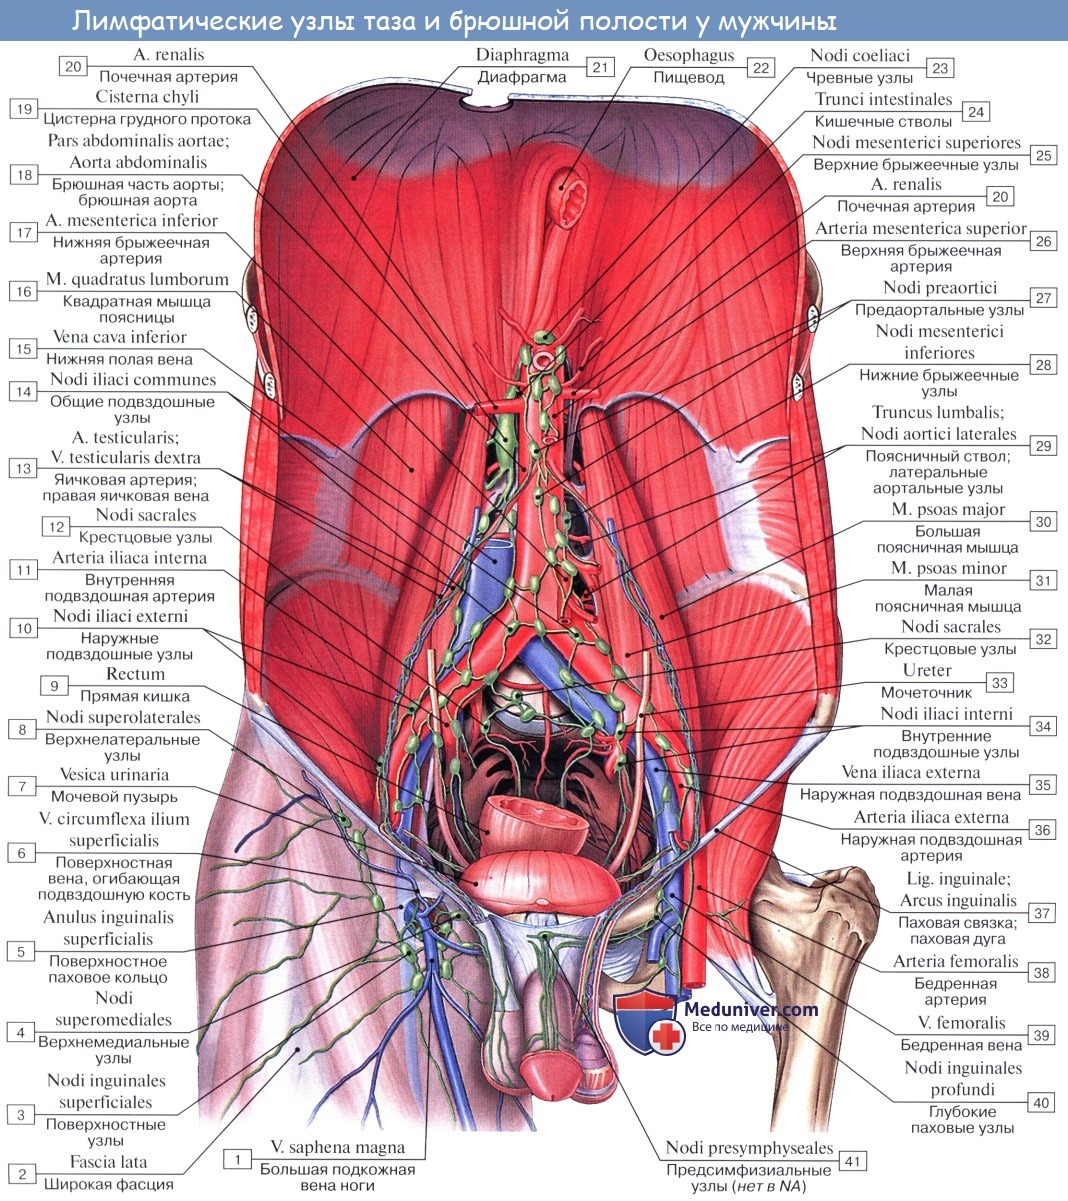 Анатомия: Сосуды (кровоснабжение), нервы (иннервация) и лимфатический отток от полового члена